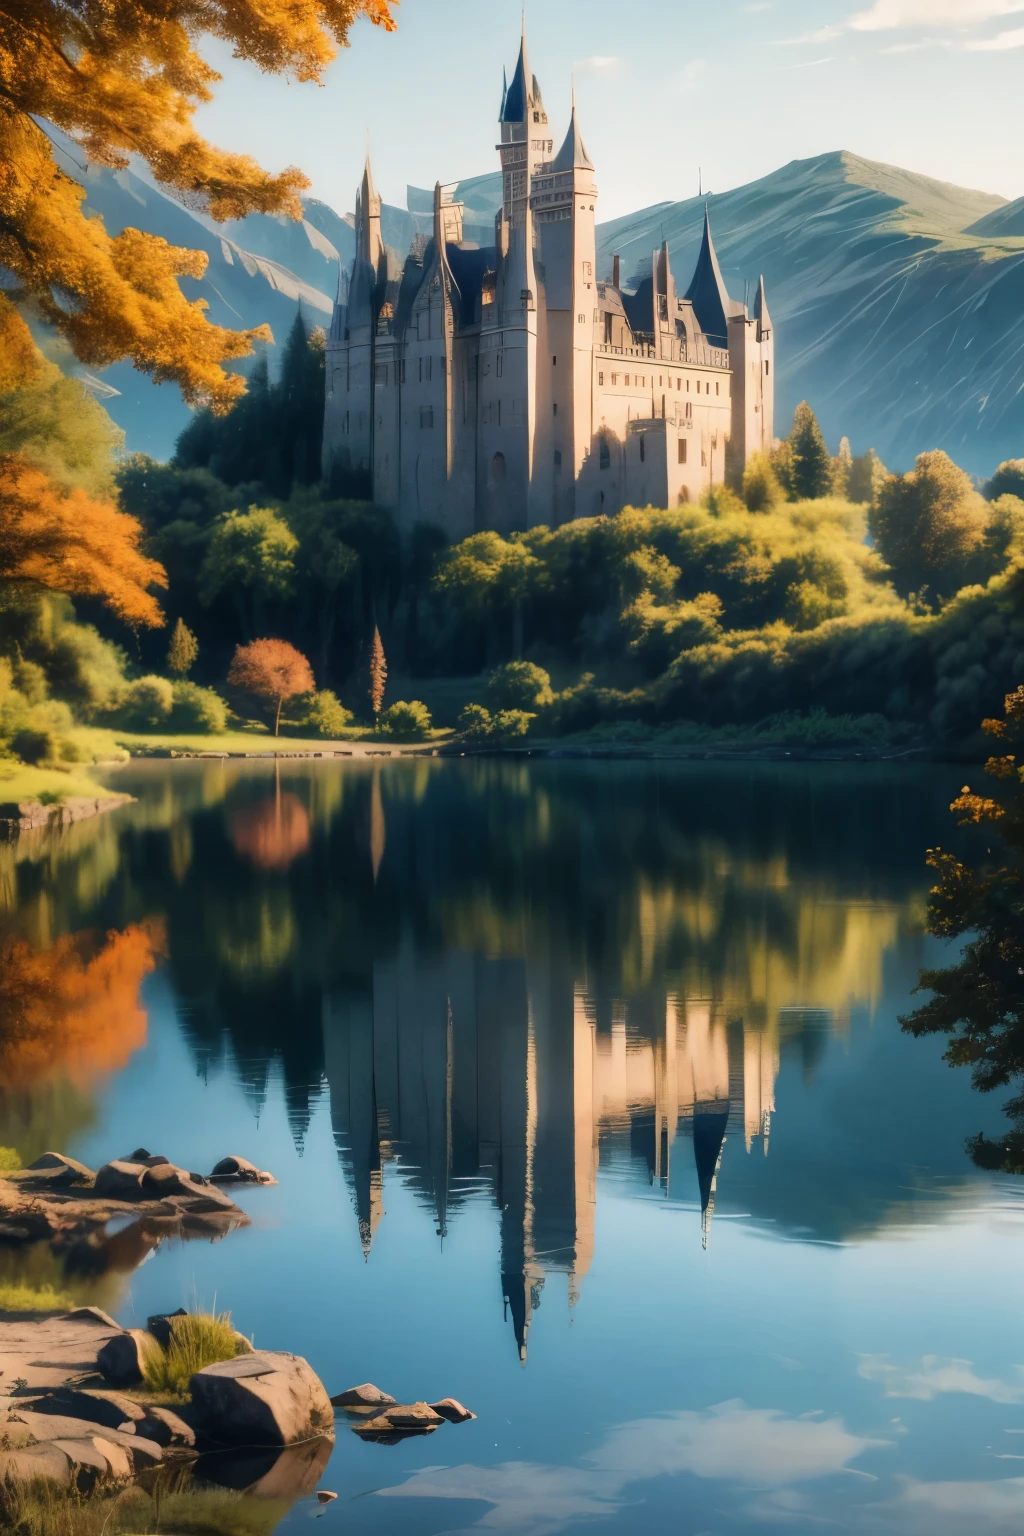 Mädchen,  Hintergrund Schloss mit Blick auf einen See, wo seine Reflexion auf das Wasser trifft und dies in seinen glorreichen Tagen widerspiegelt